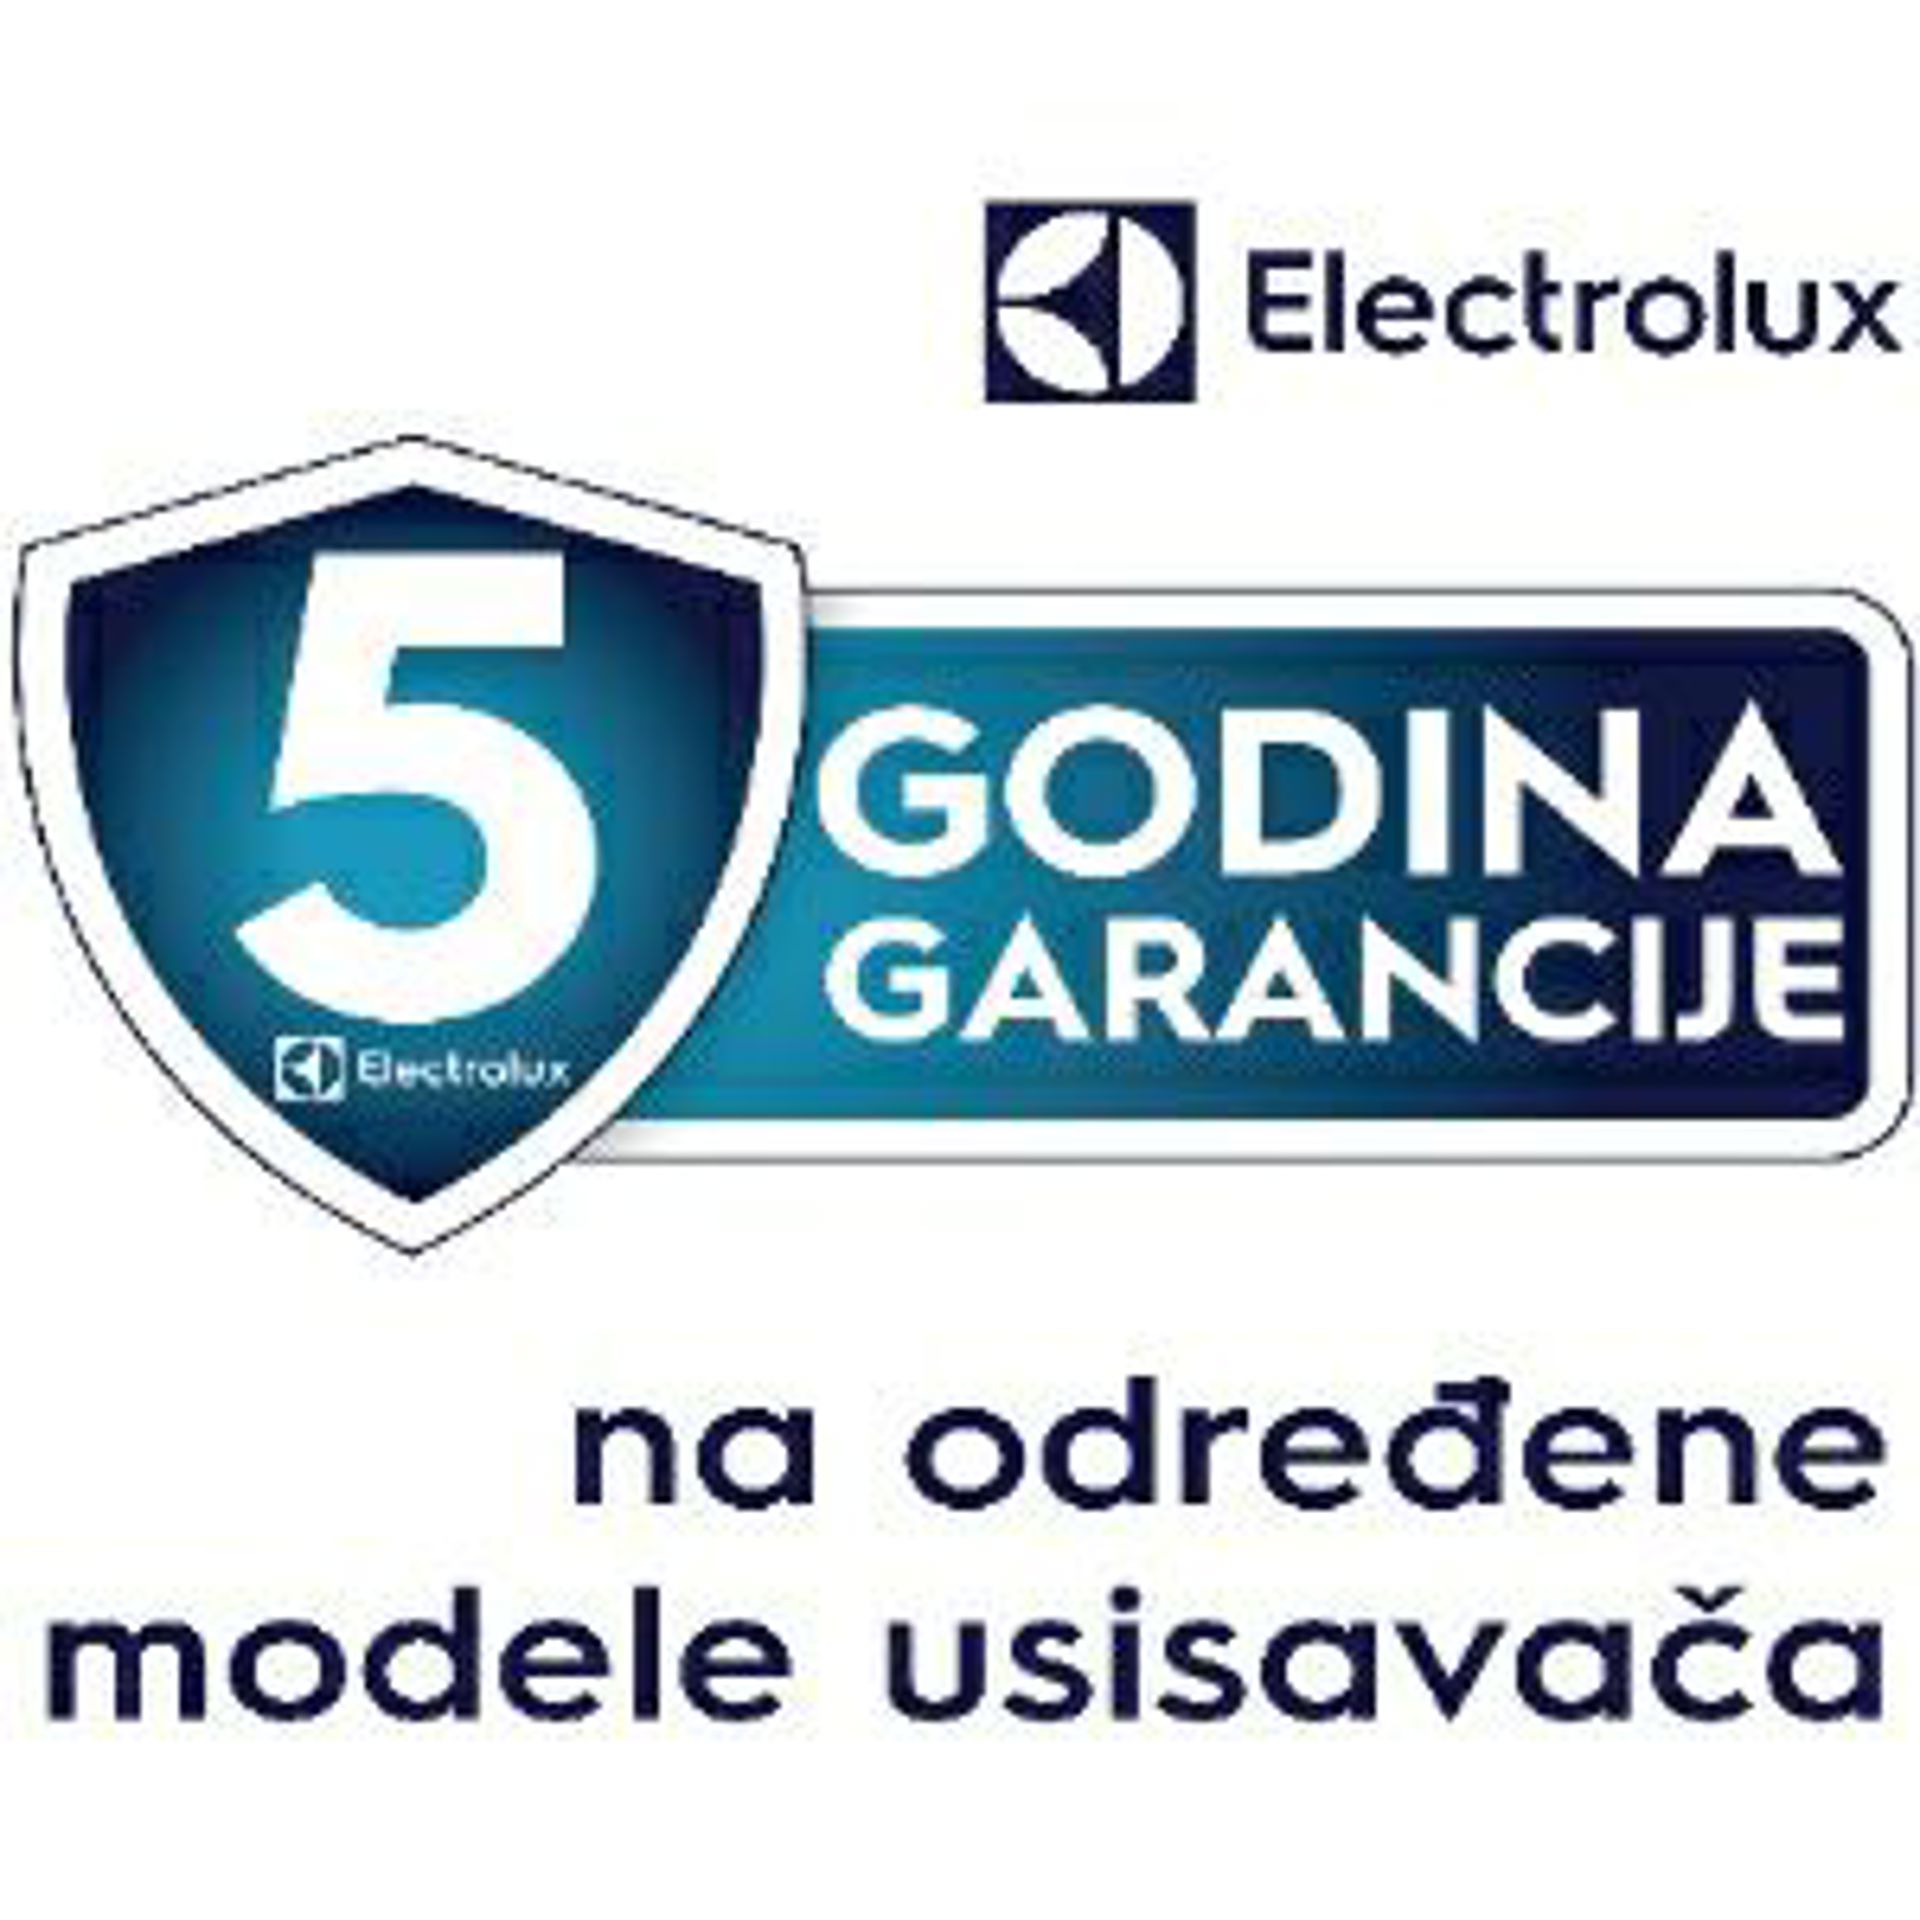 Usisavači Electrolux sa 5 godina garancije